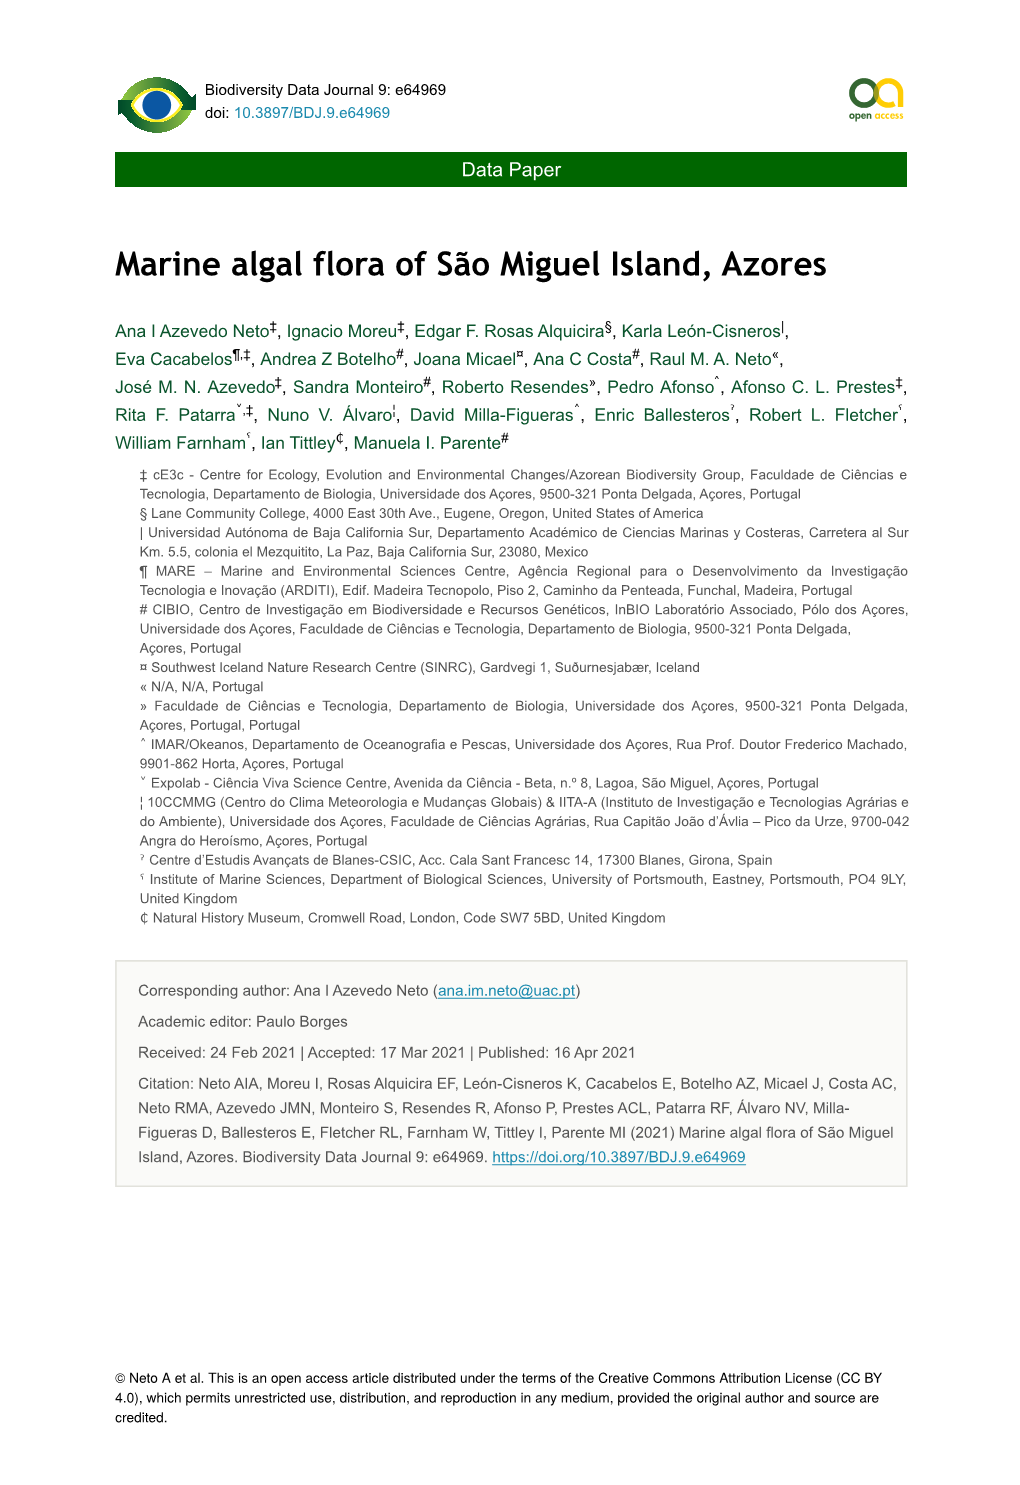 Marine Algal Flora of São Miguel Island, Azores